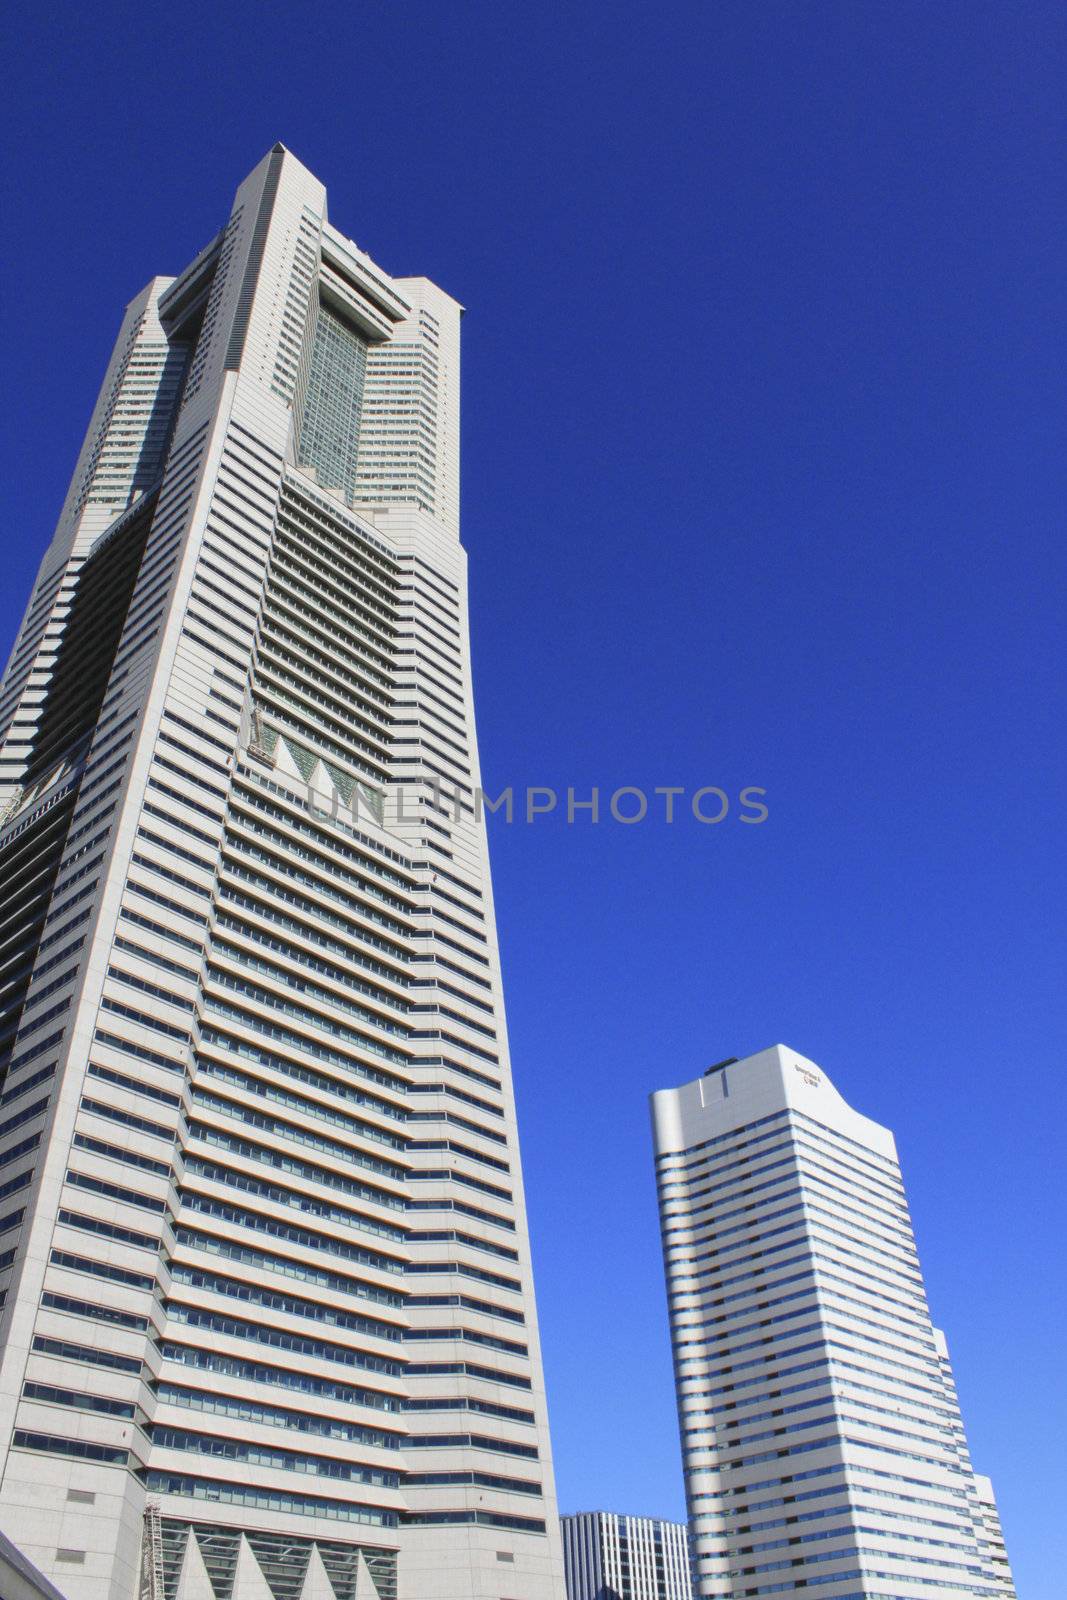 high building in yokohama,japan by nuchylee